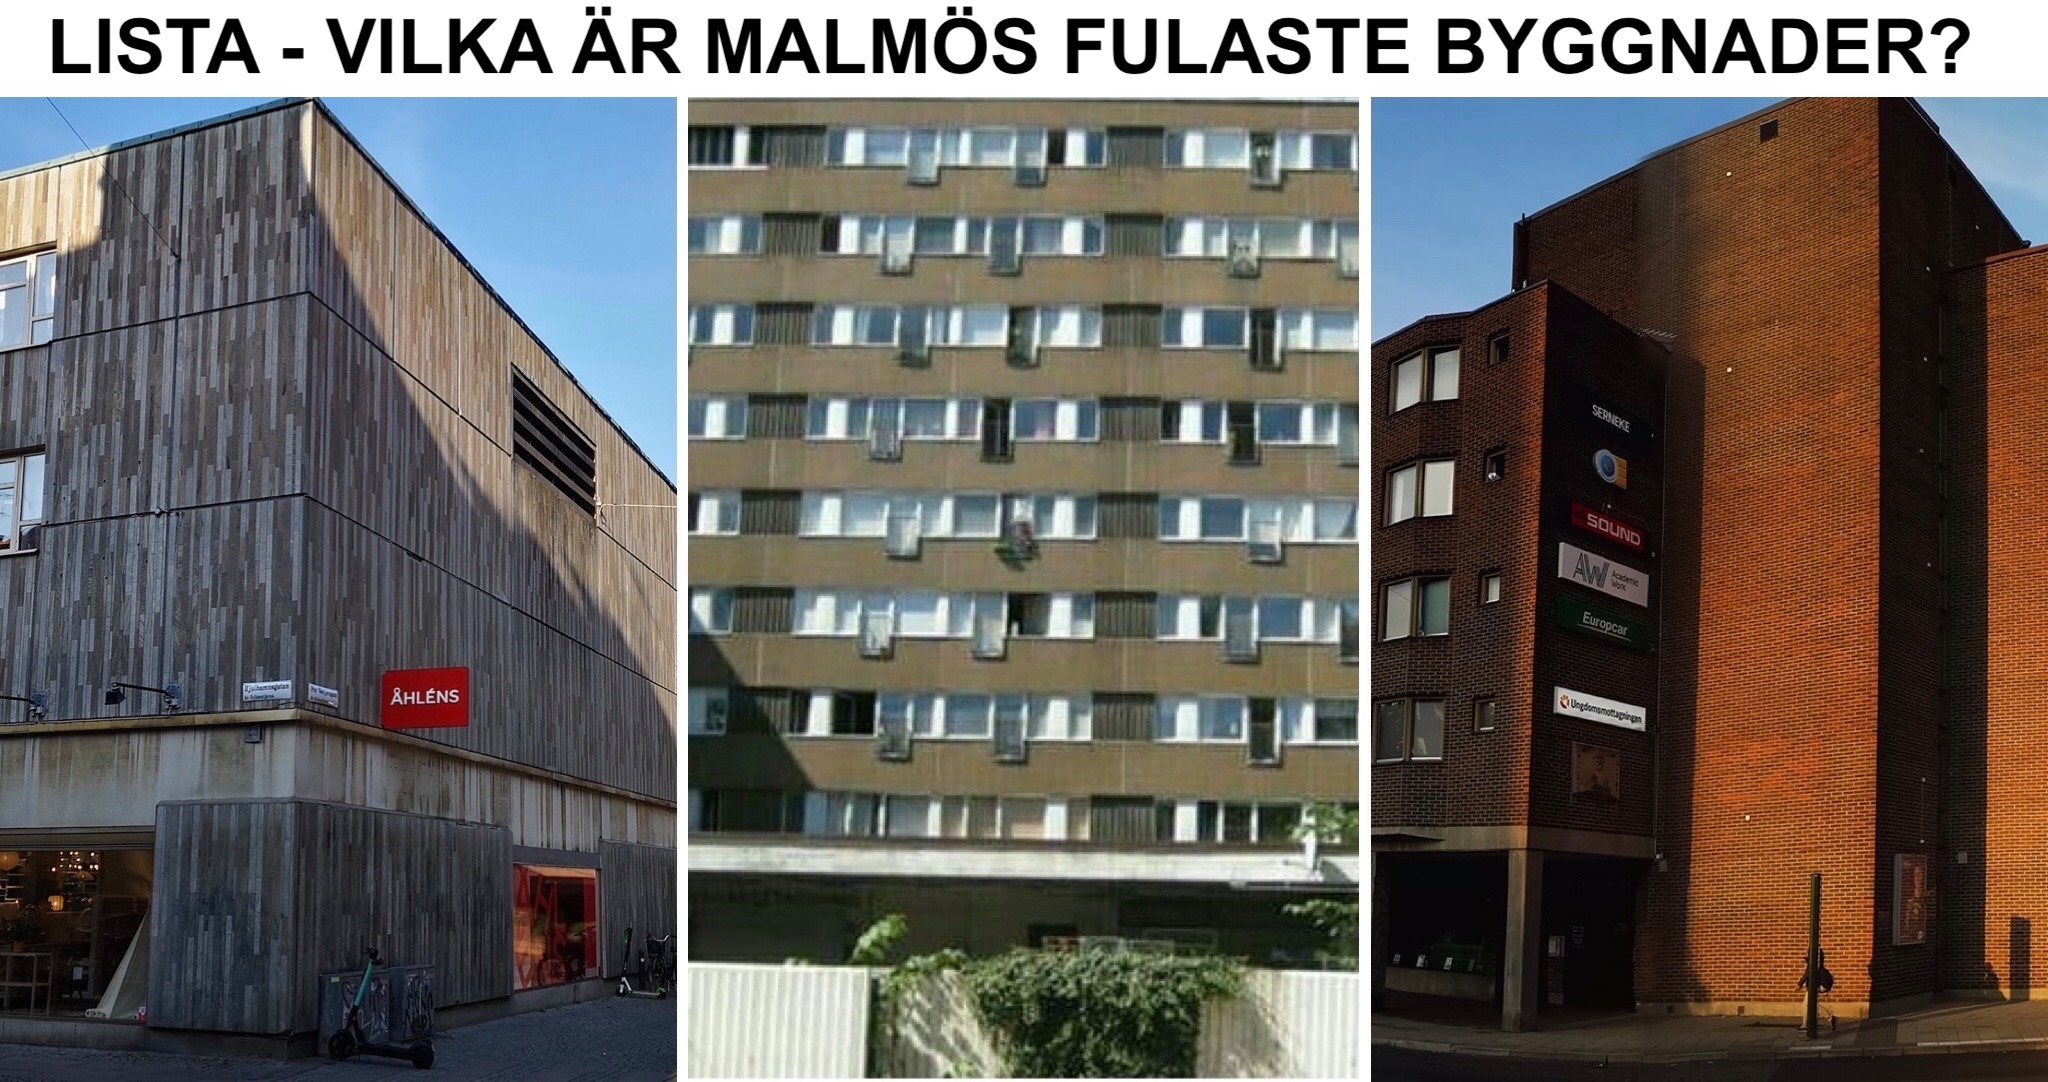 Lista - Malmös fulaste byggnader.